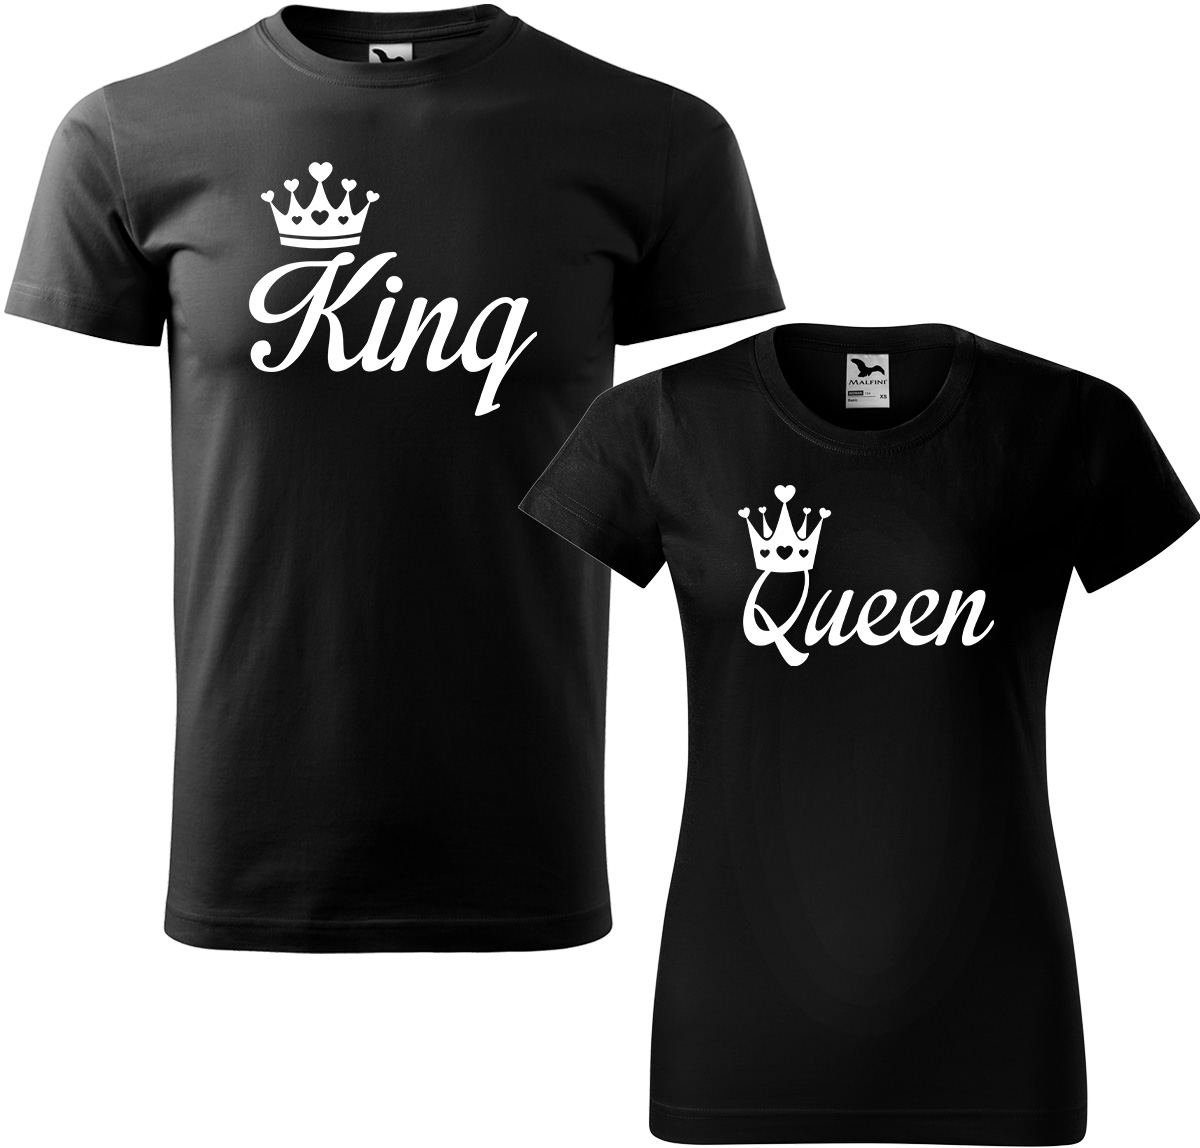 Trička pro páry - King a queen Barva: Černá (01), Velikost dámské tričko: 3XL, Velikost pánské tričko: 4XL